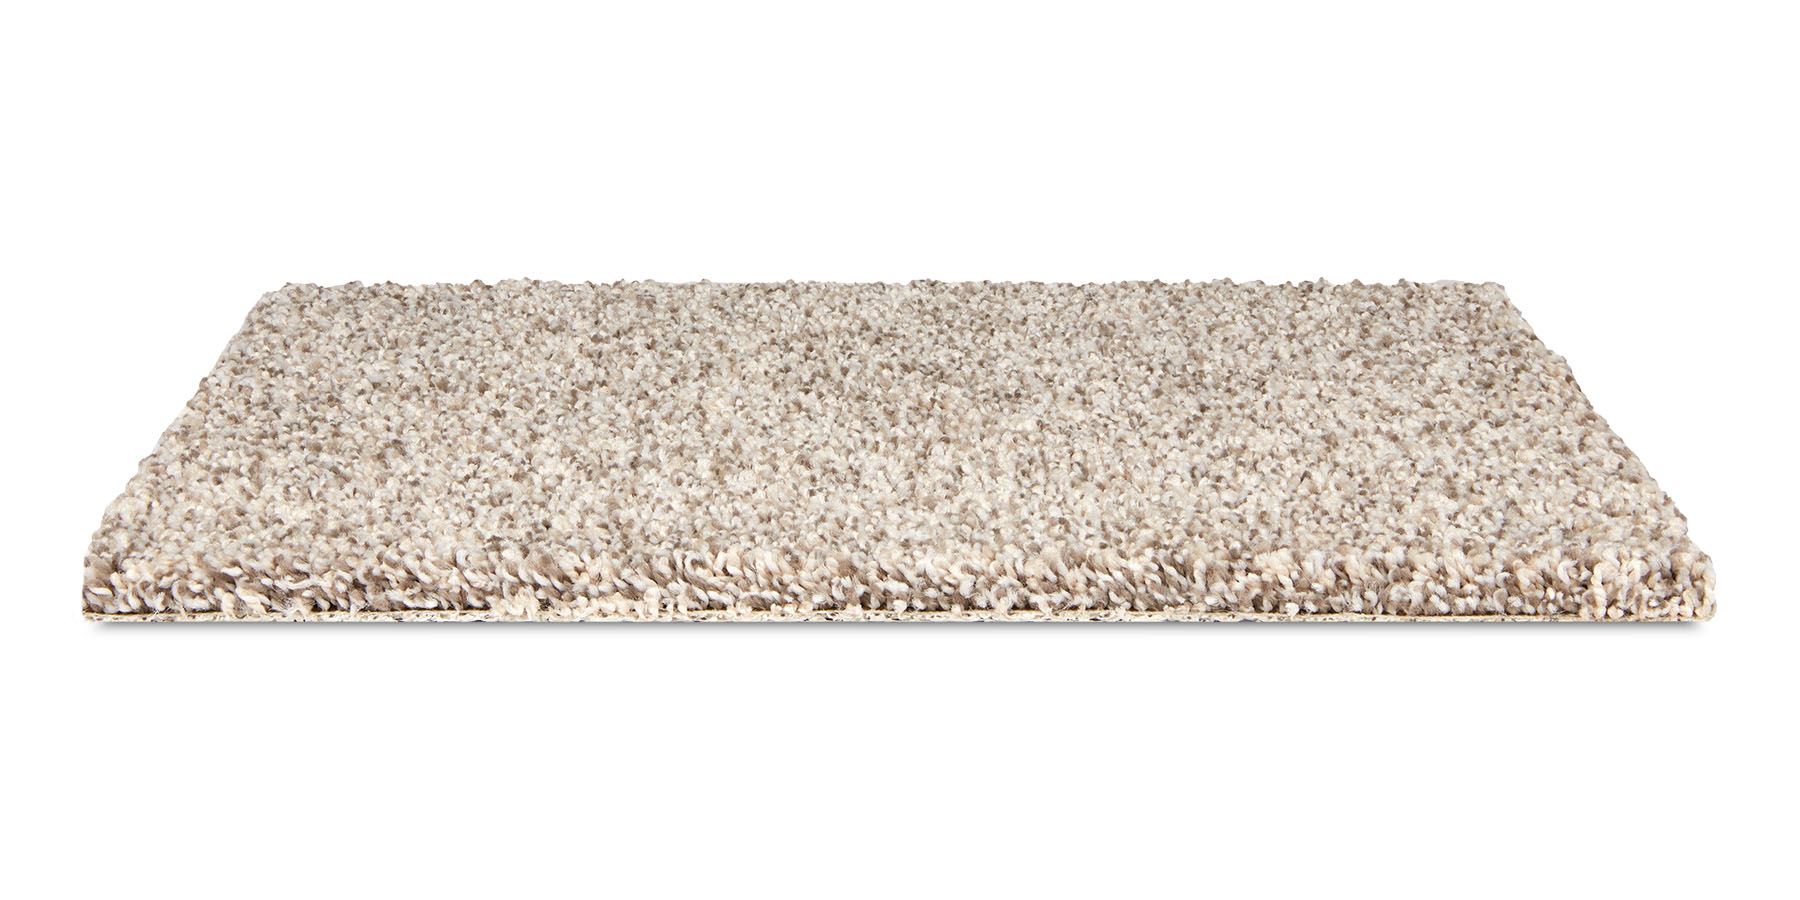 Alderbrook Arbor Carpet